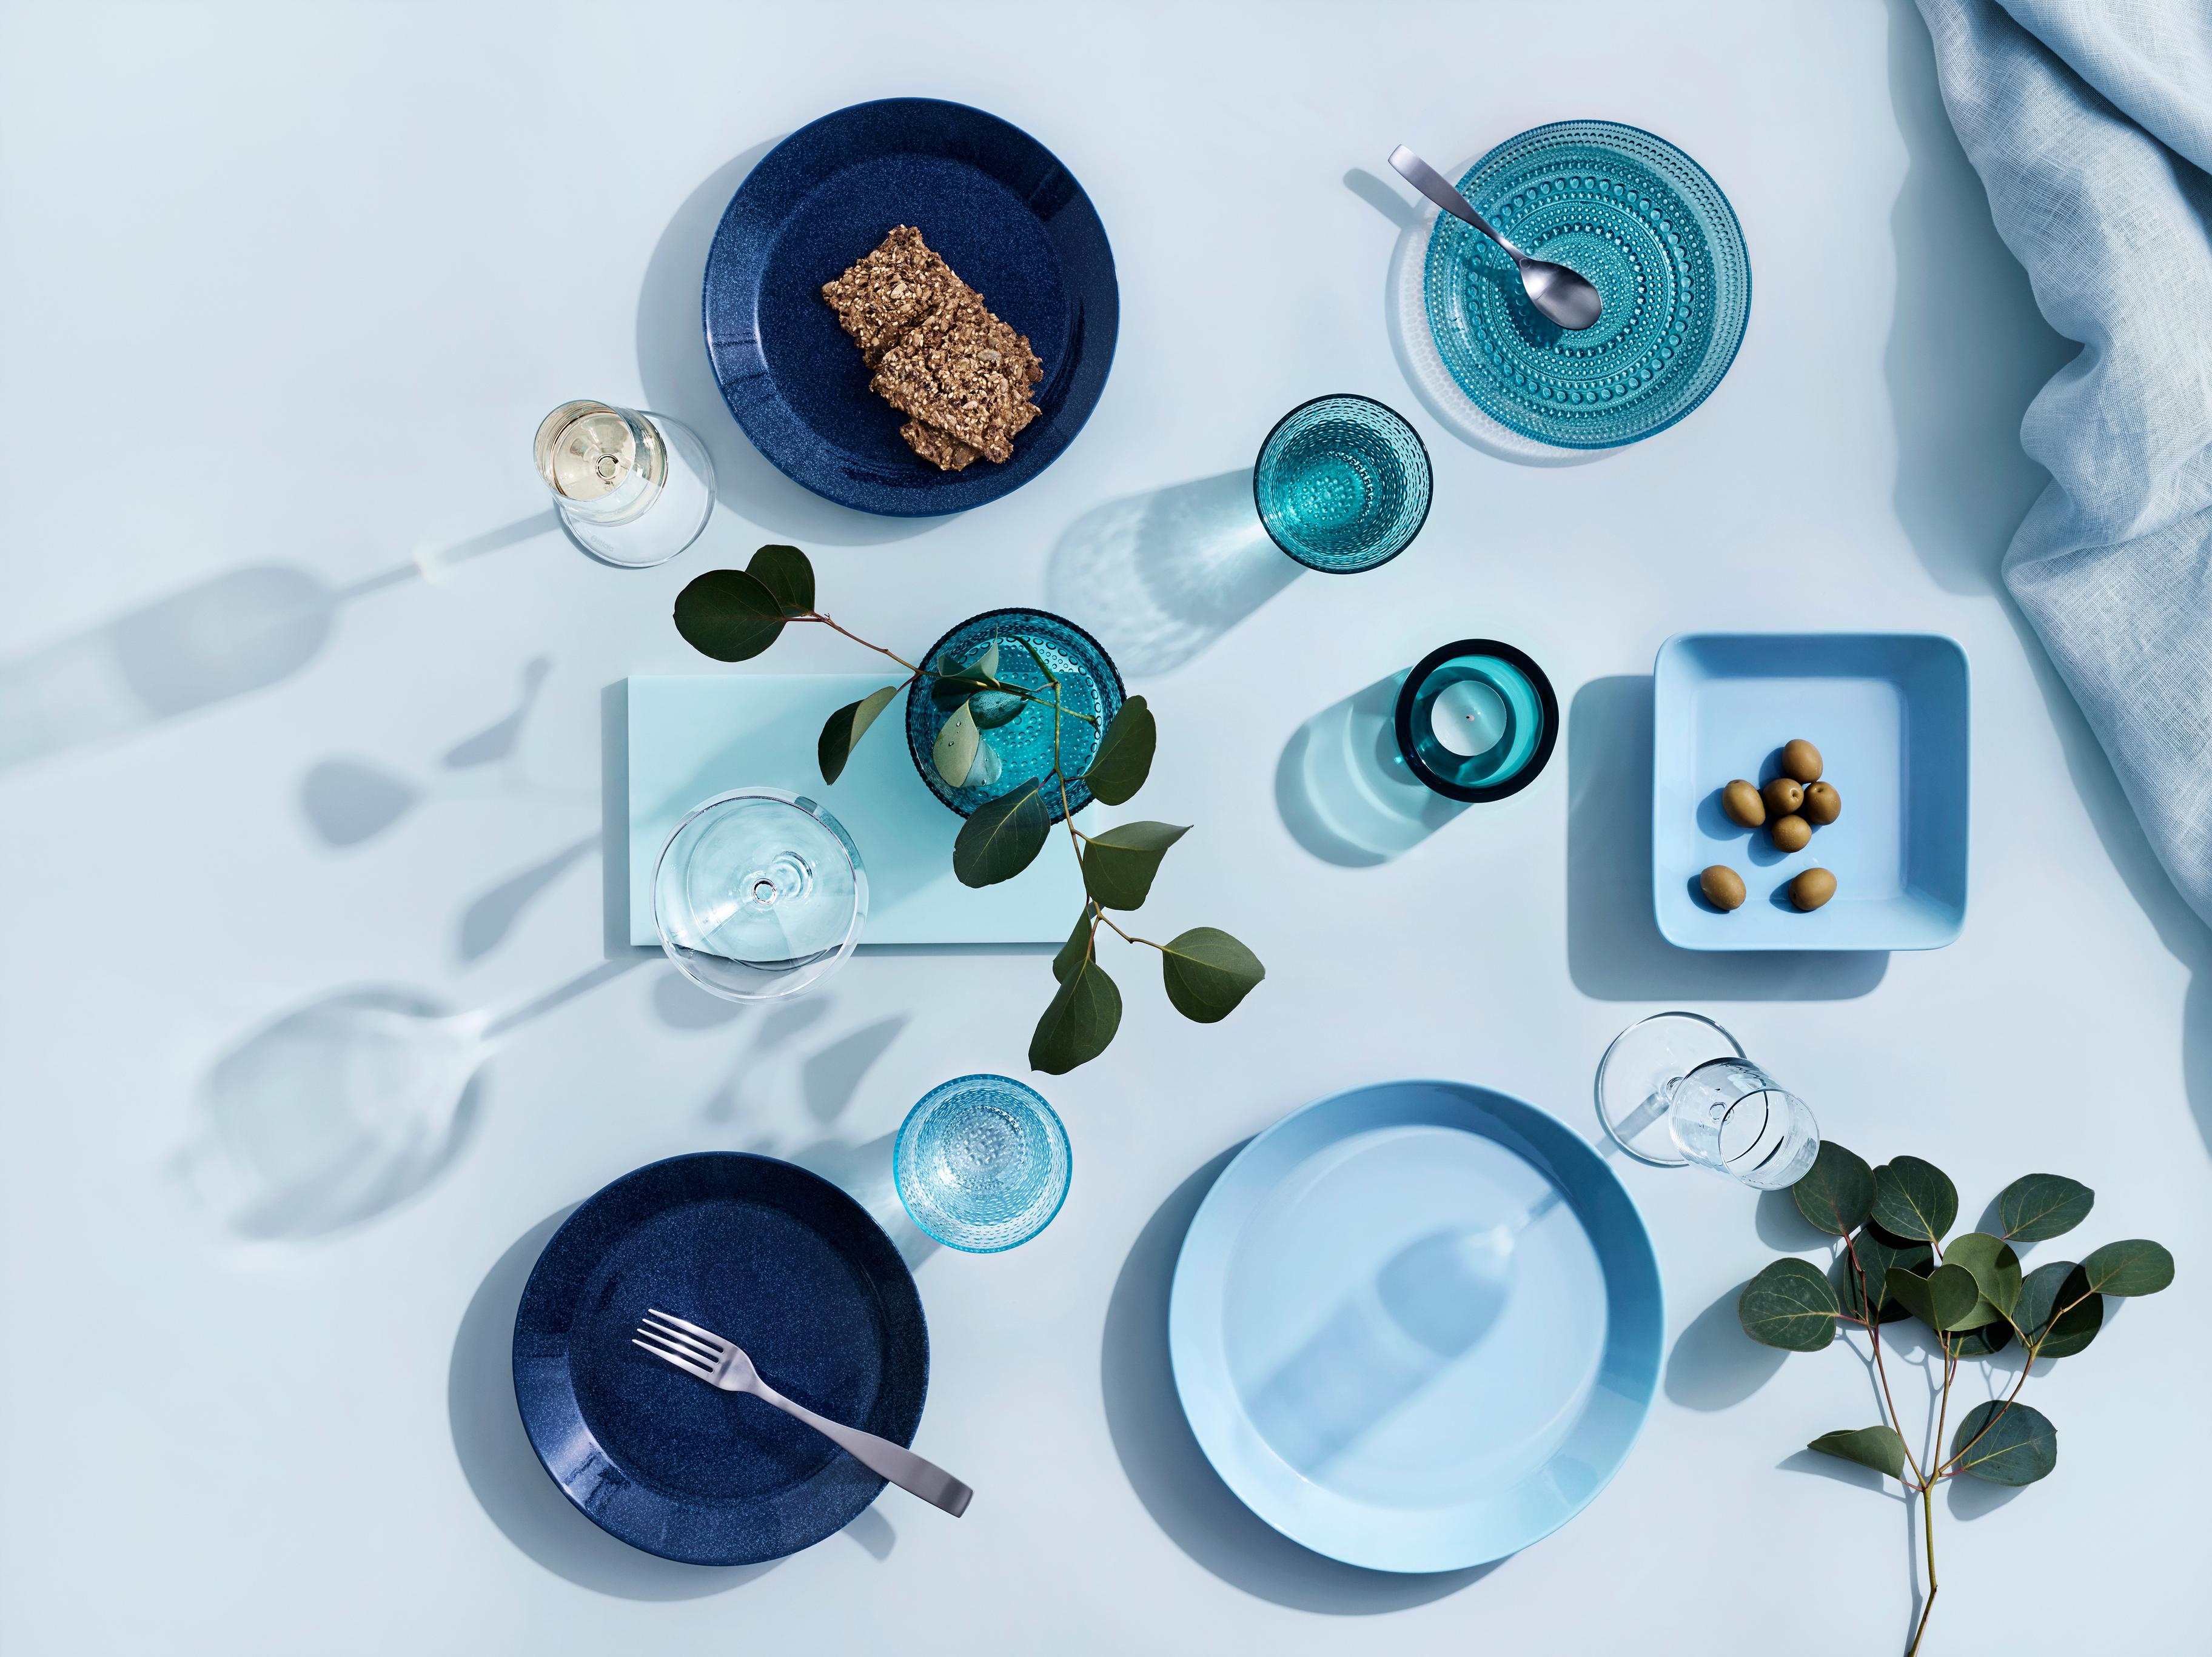 Iittala Teema Kastehelmi Valkea Essence lasit lautaset kynttilälyhty turkoosi sininen kirkas